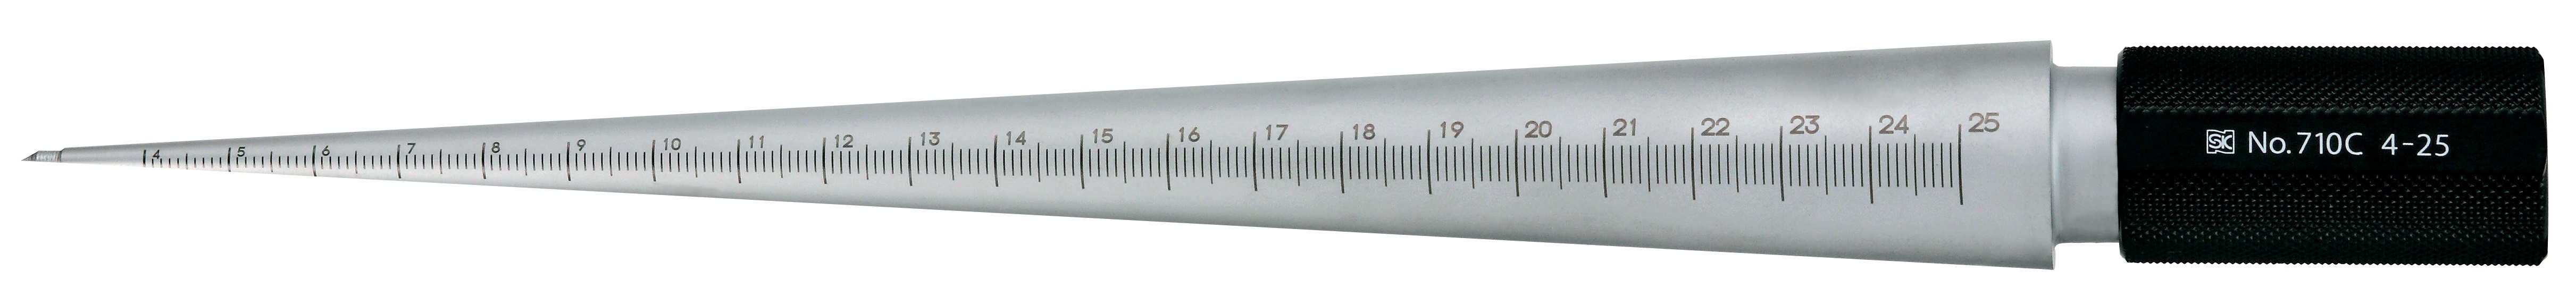 Calibres cónicos - cilíndricos para medir el tamaño del agujero, acabado plateado, TPG 710